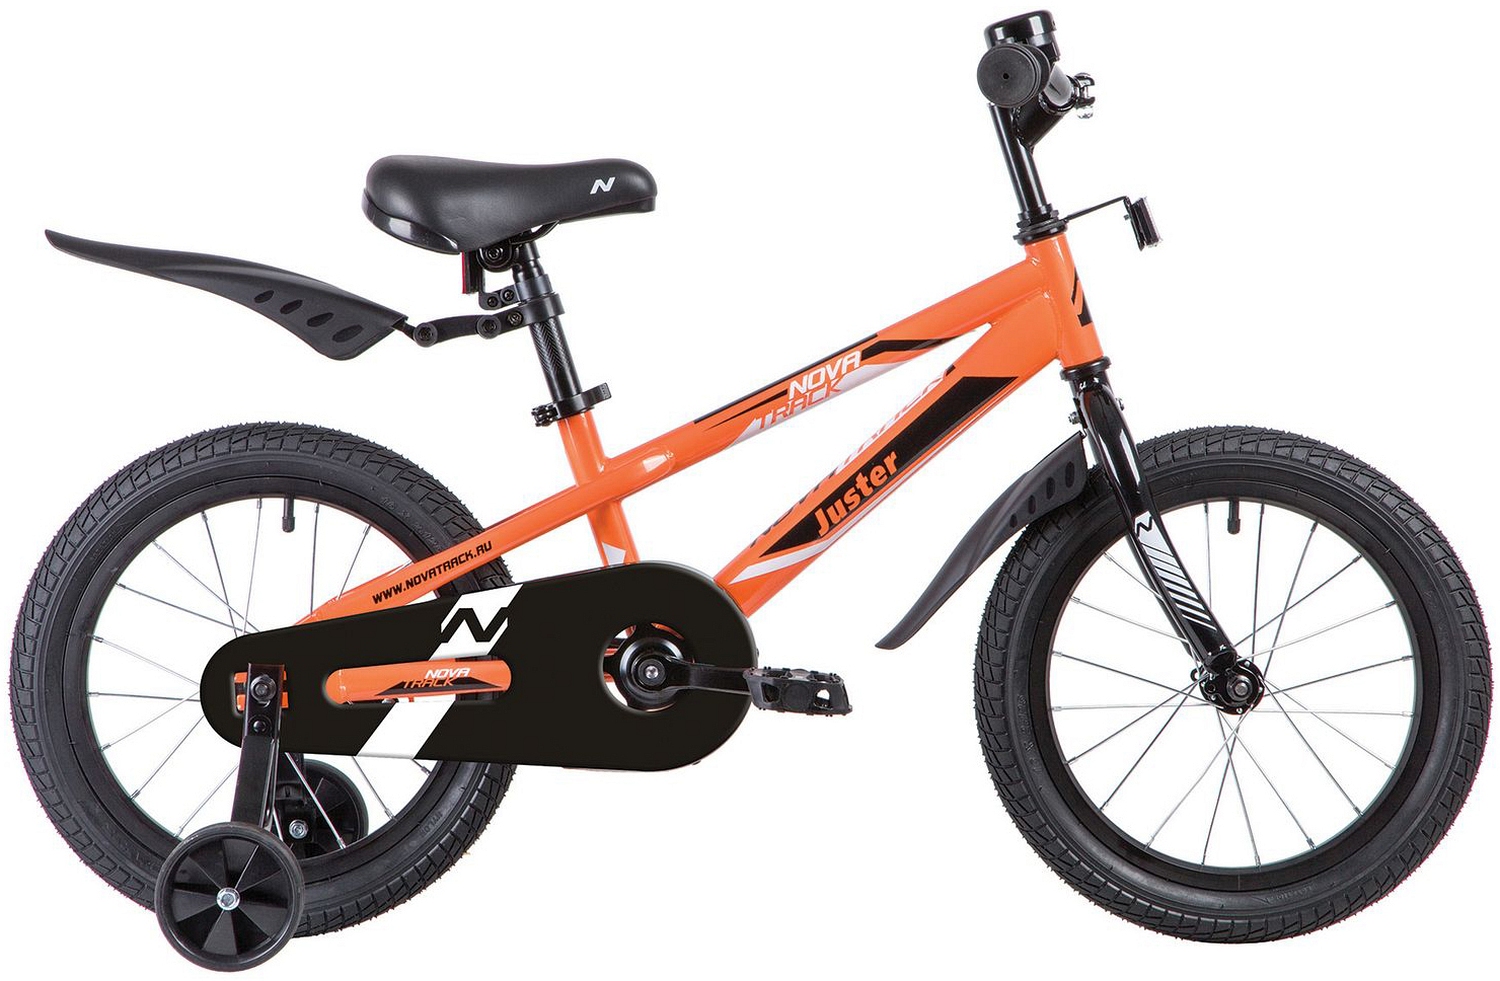  Отзывы о Детском велосипеде Novatrack Juster 16 2020